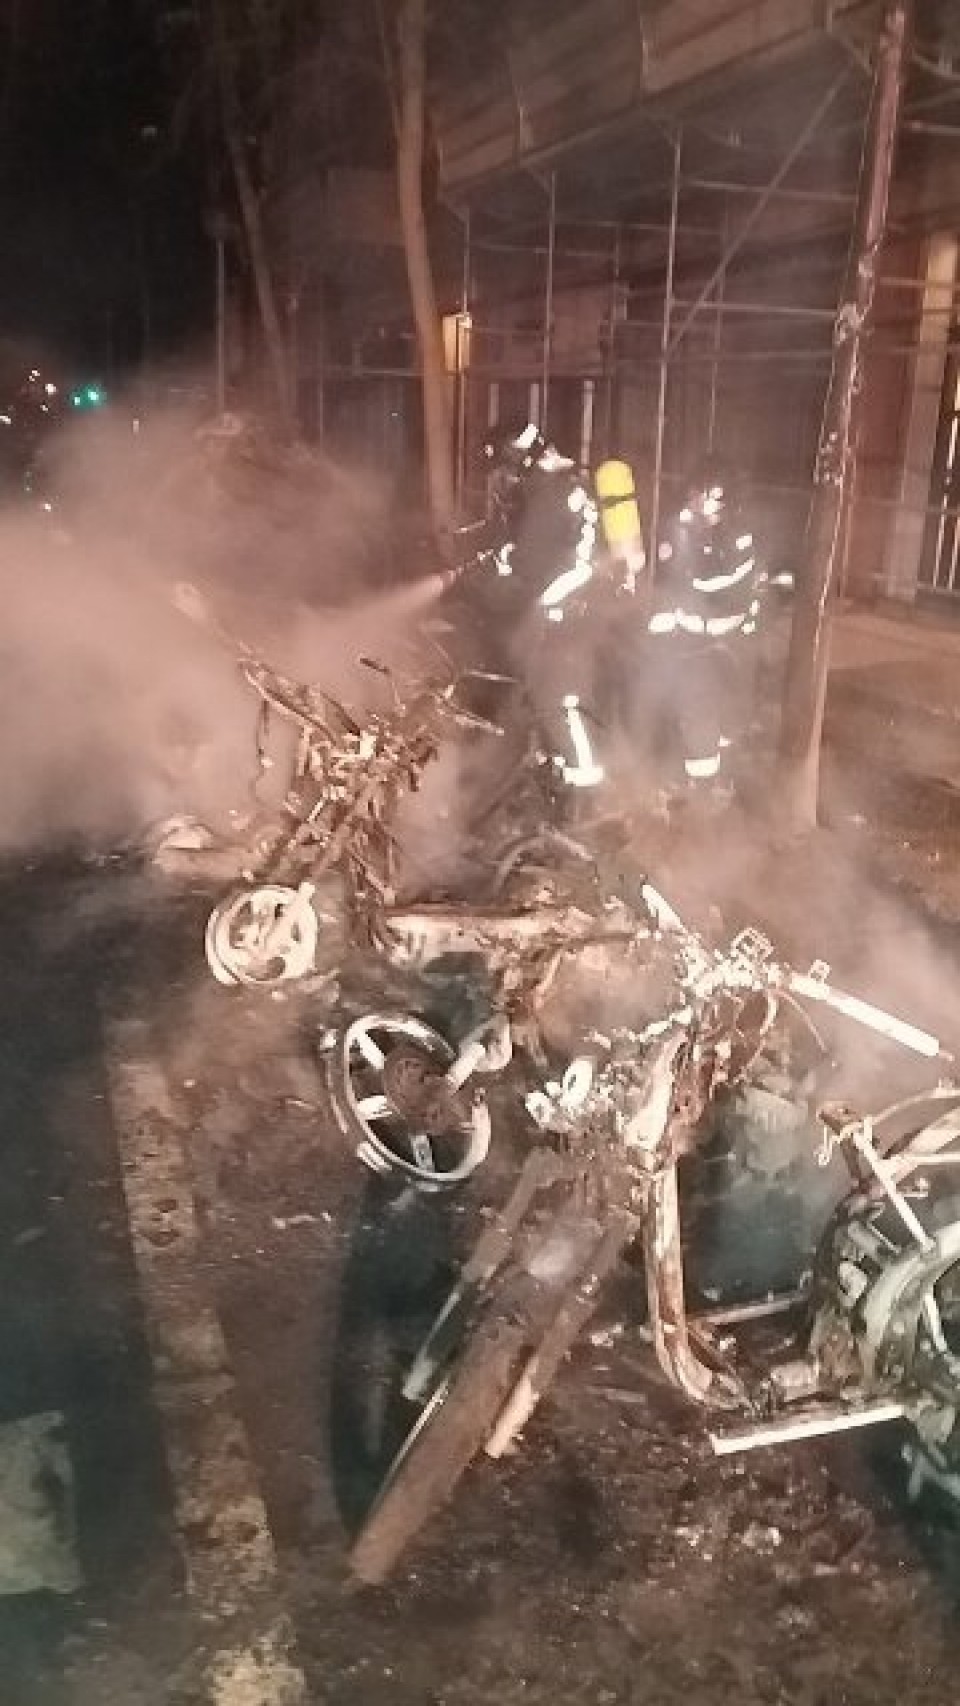 Un incendio calcina cinco motocicletas y un turismo en Donostia. Foto: DSS Babes Zibila